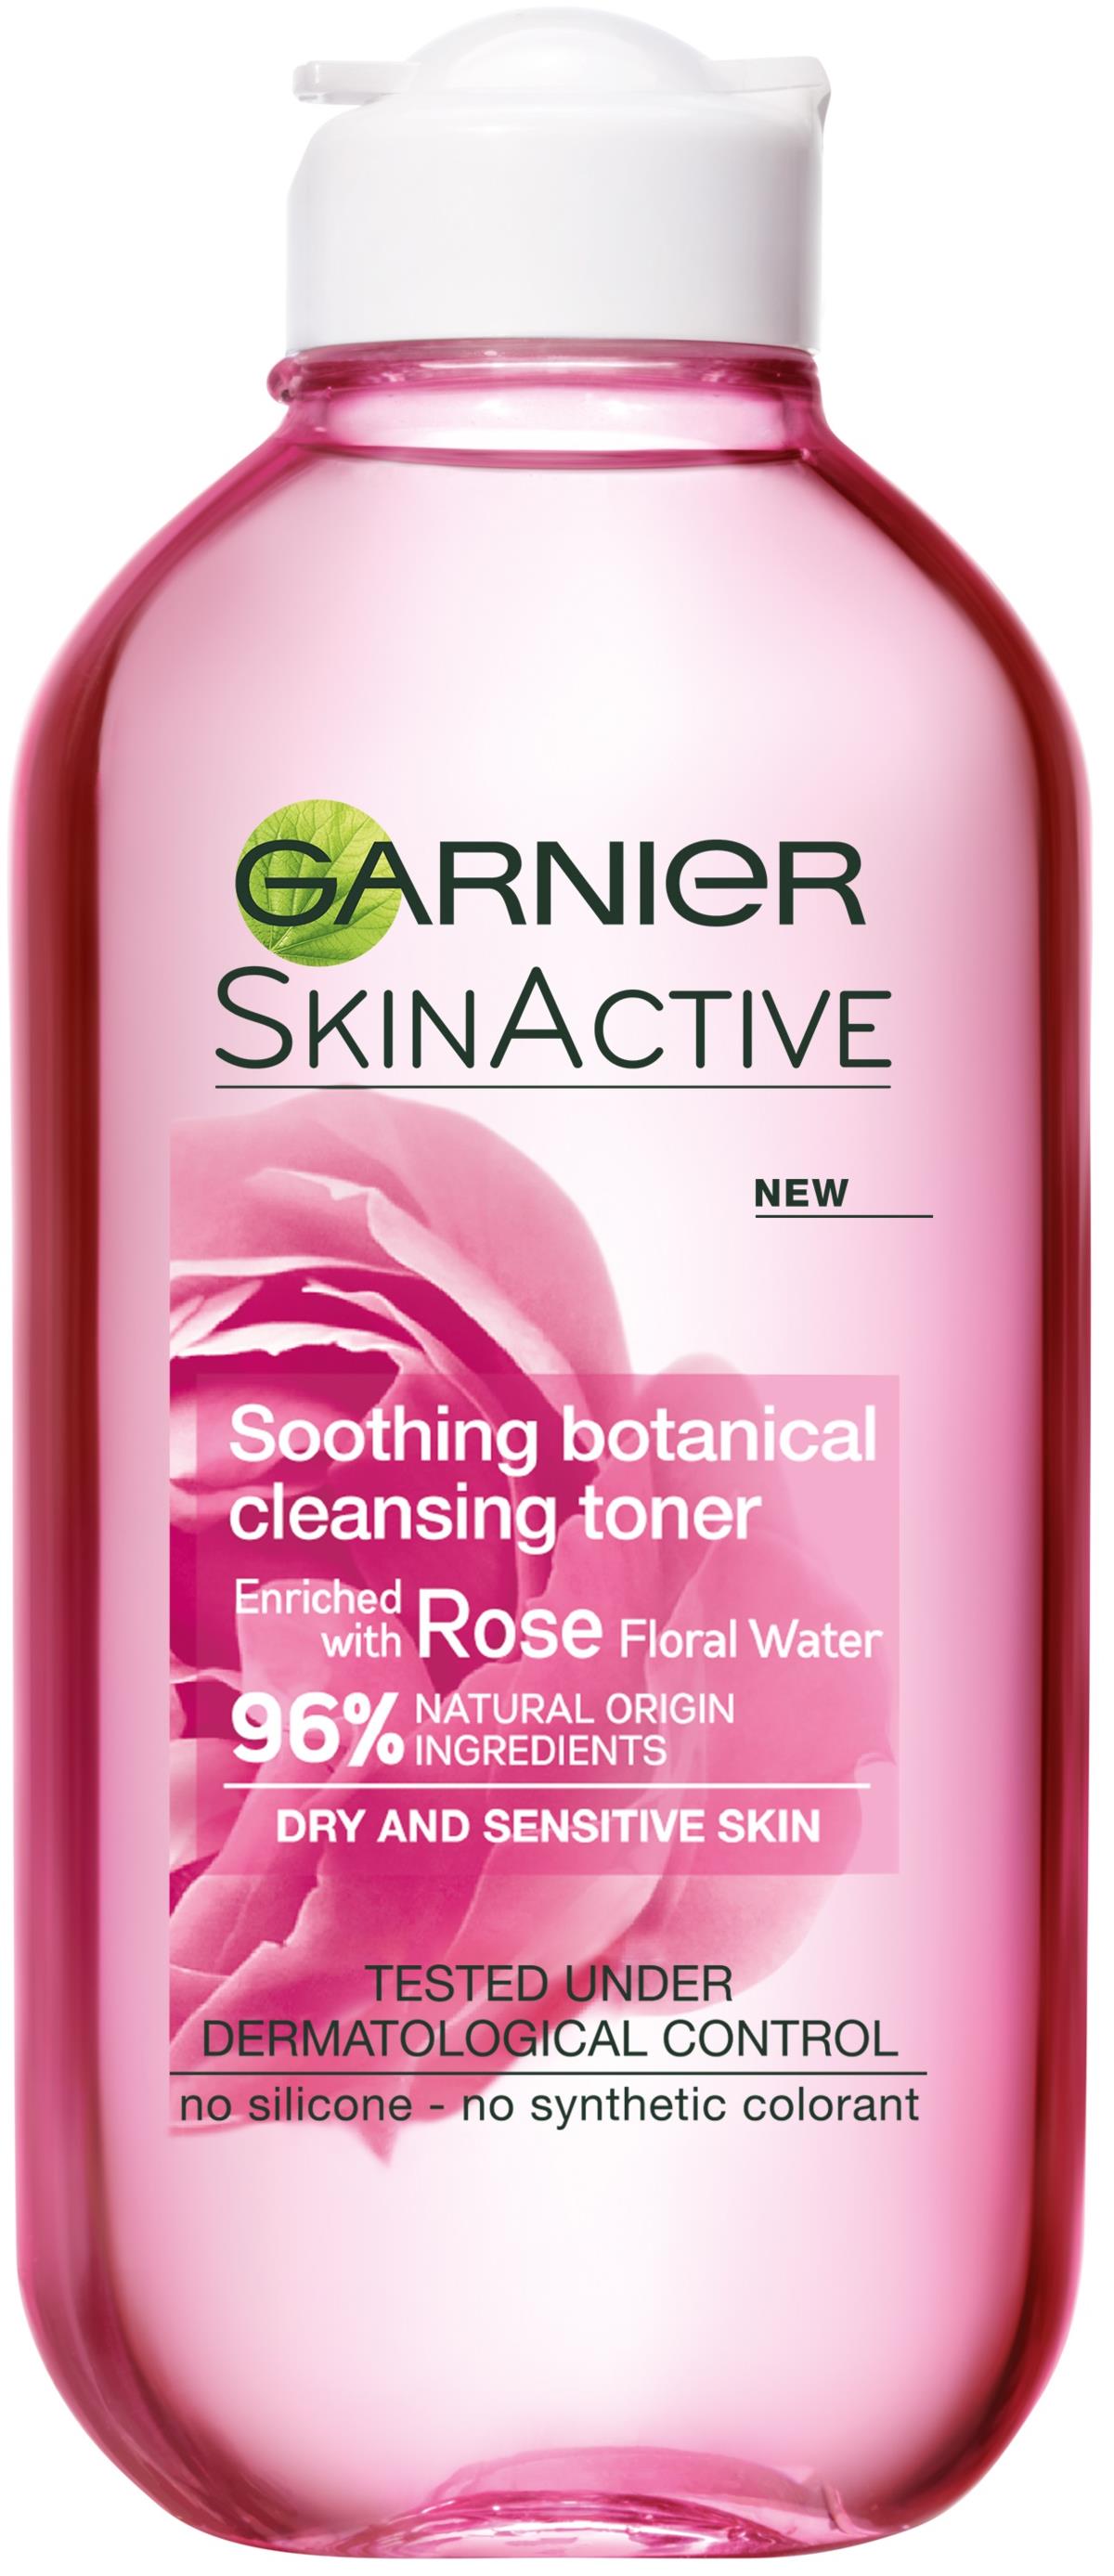 Garnier SkinActive Soothing Botanical Cleansing Toner 200 ml 